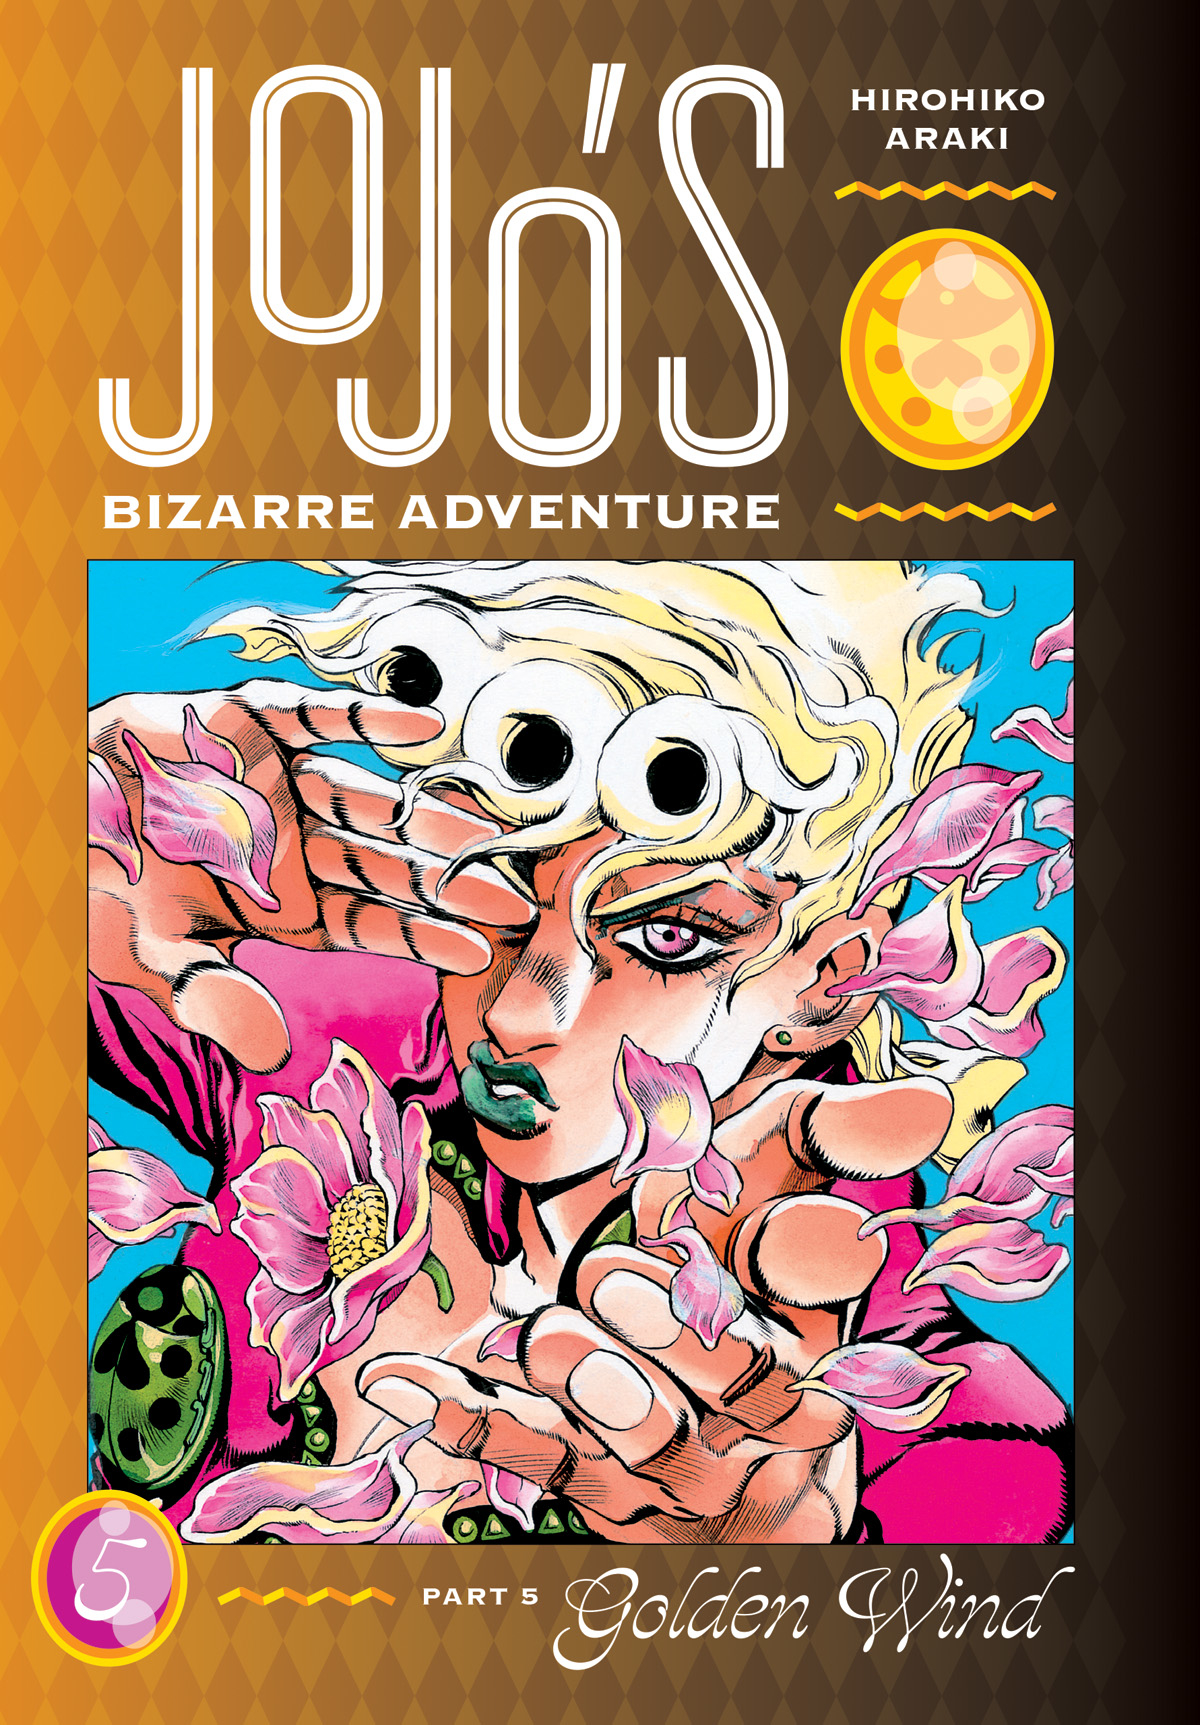 Jojos Bizarre Adventure Part 5 Golden Wind Hardcover Volume 5